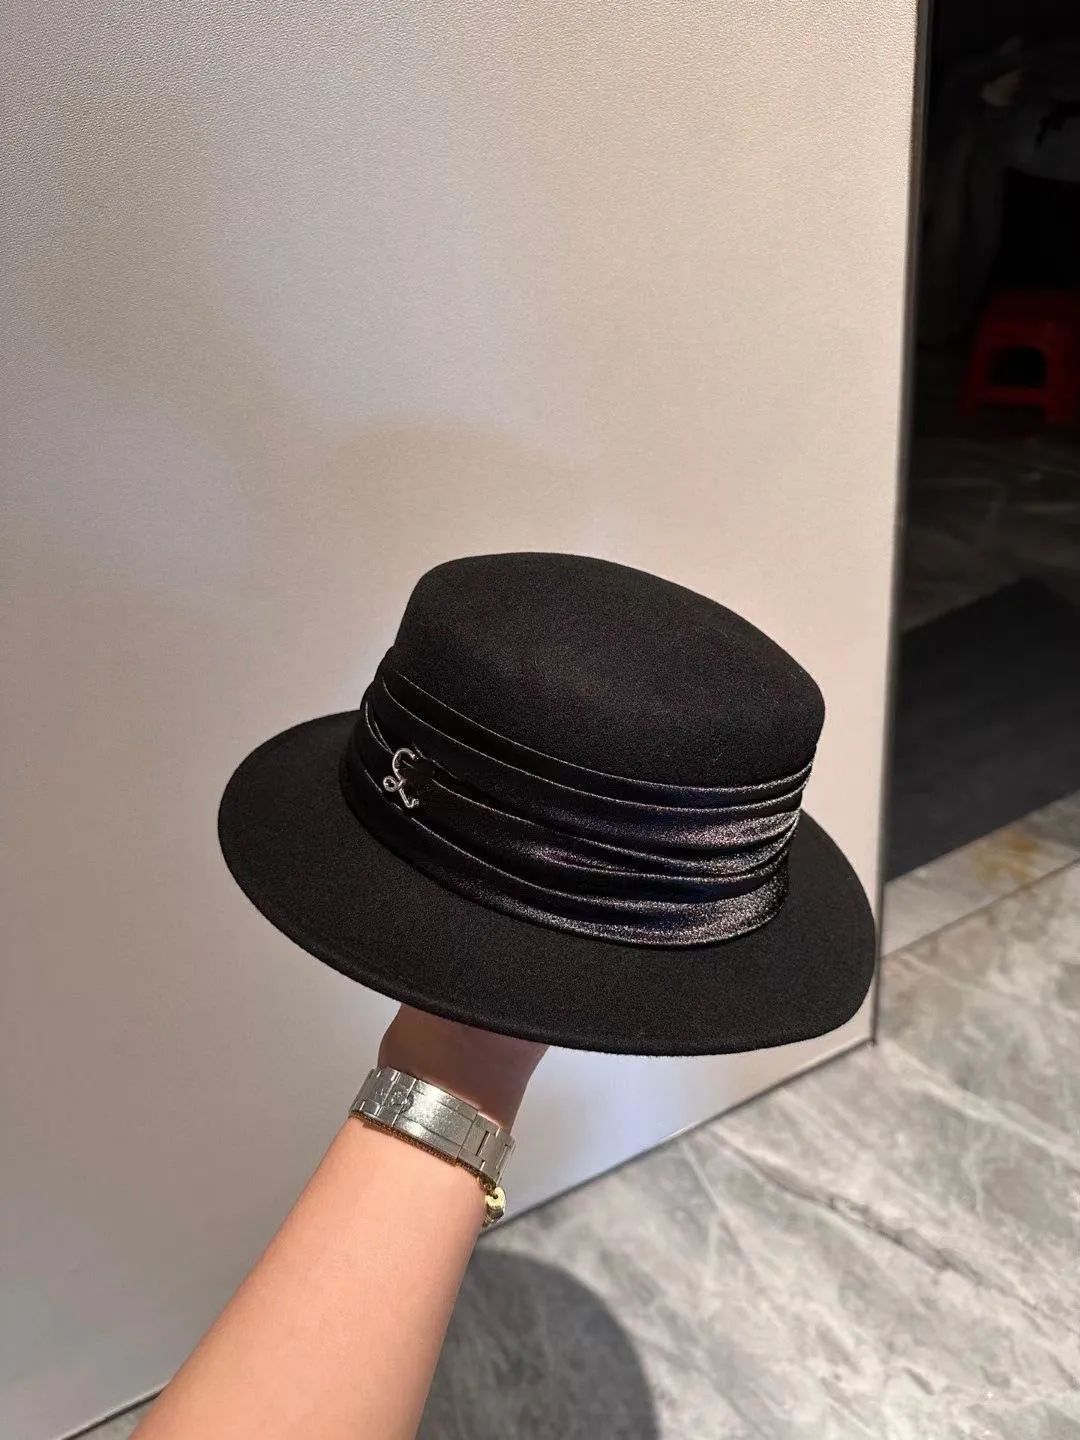 Sombrero de copa plano de otoño e invierno Loewe elegante sombrero de lana Hepburn moda Jazz sombrero de alero grande